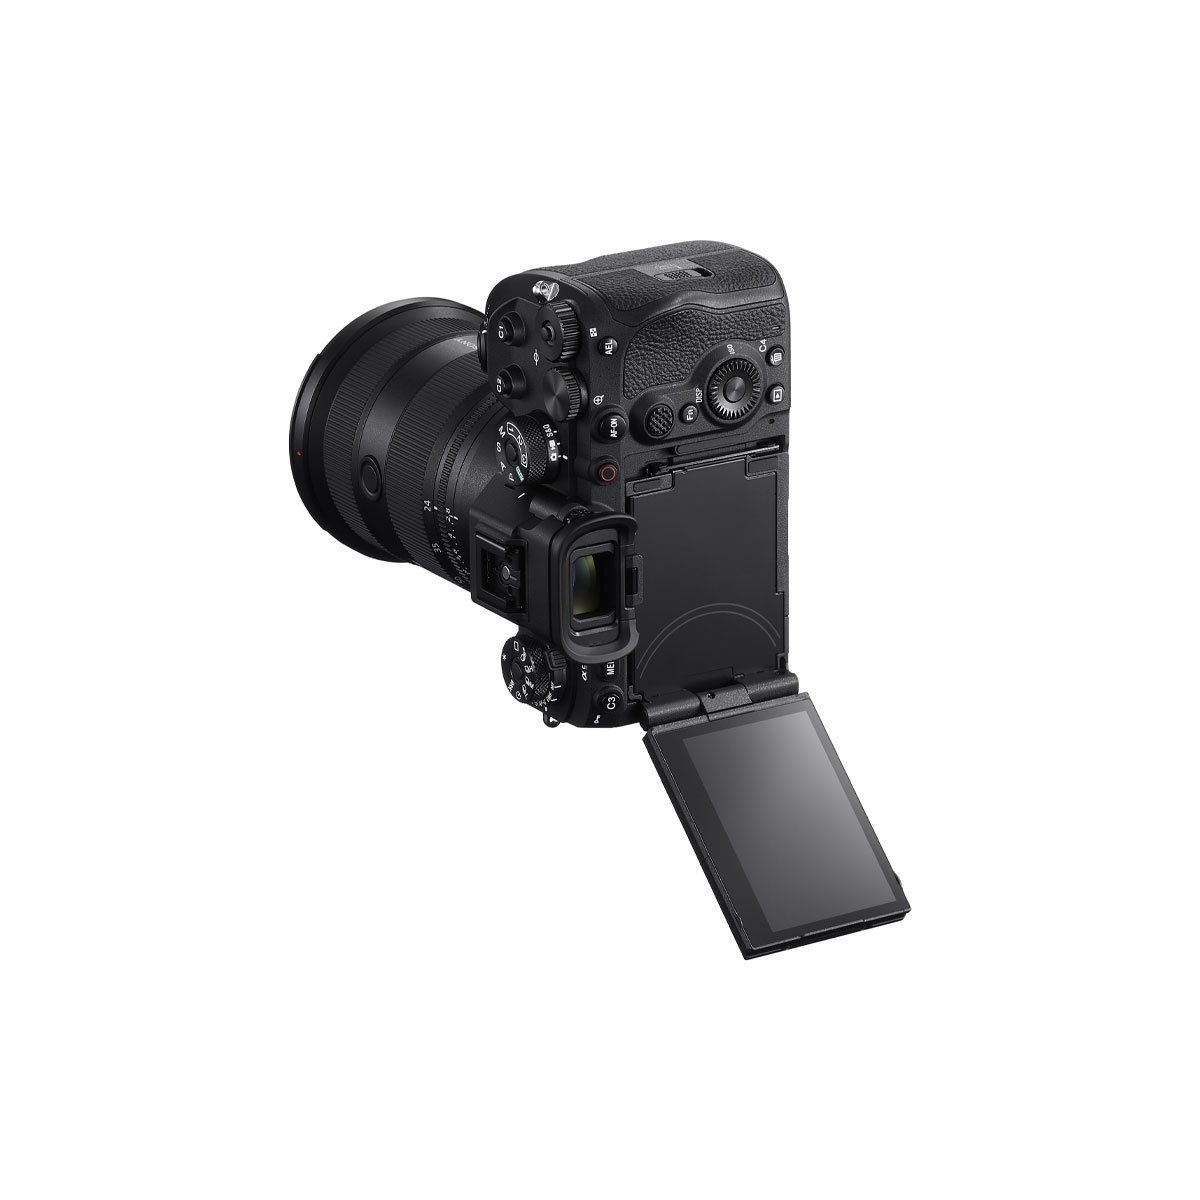  Máy ảnh Sony Alpha 9 Mark III/ ILCE-9M3 /A9M3 - Chính hãng 